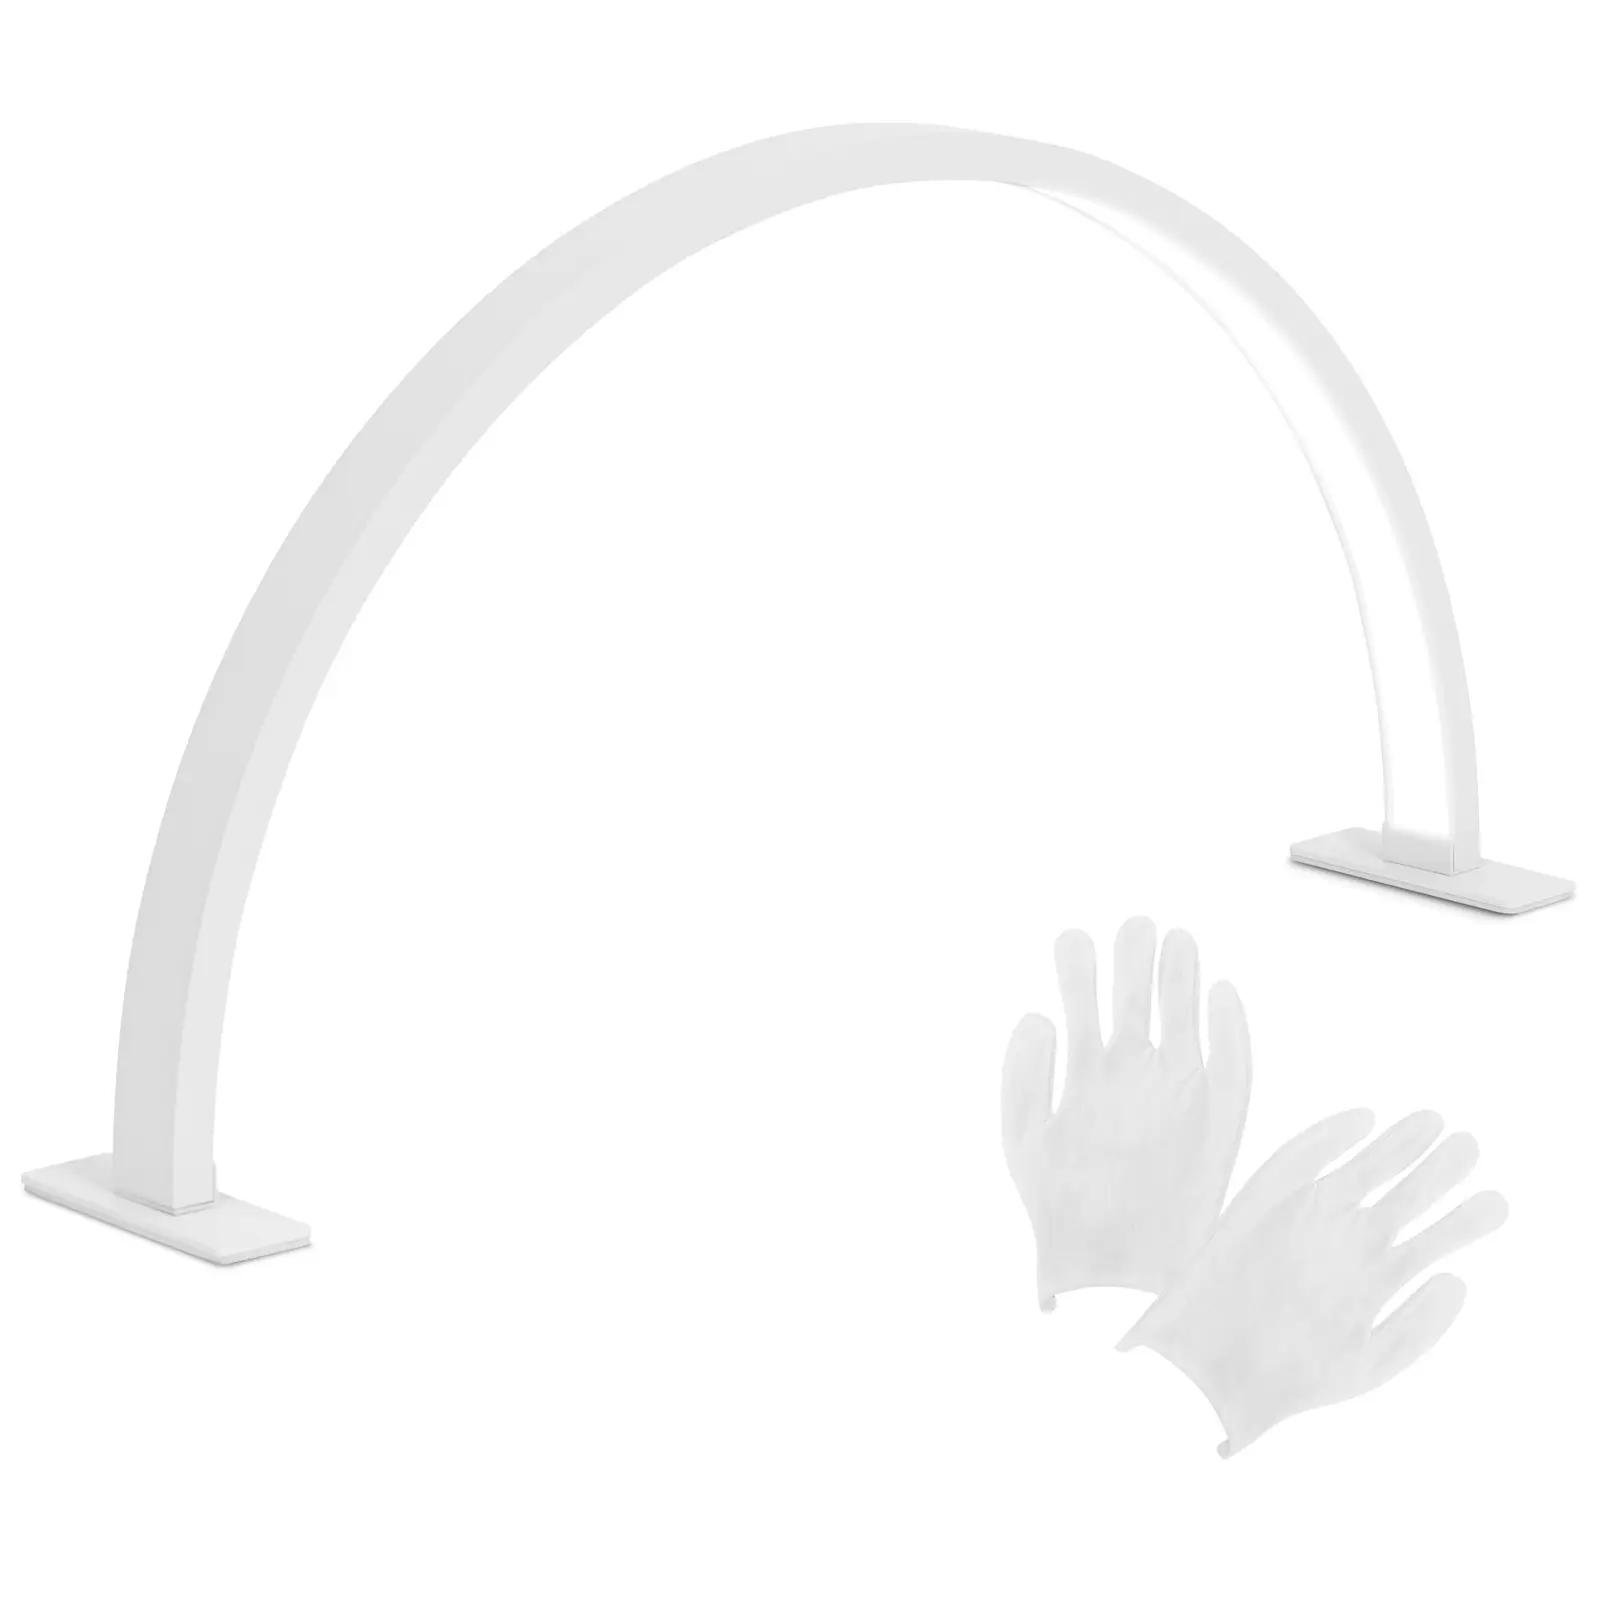 Lampa do manicure LED - światło dzienne białe (6000 K) - 1700 lm - bezcieniowa